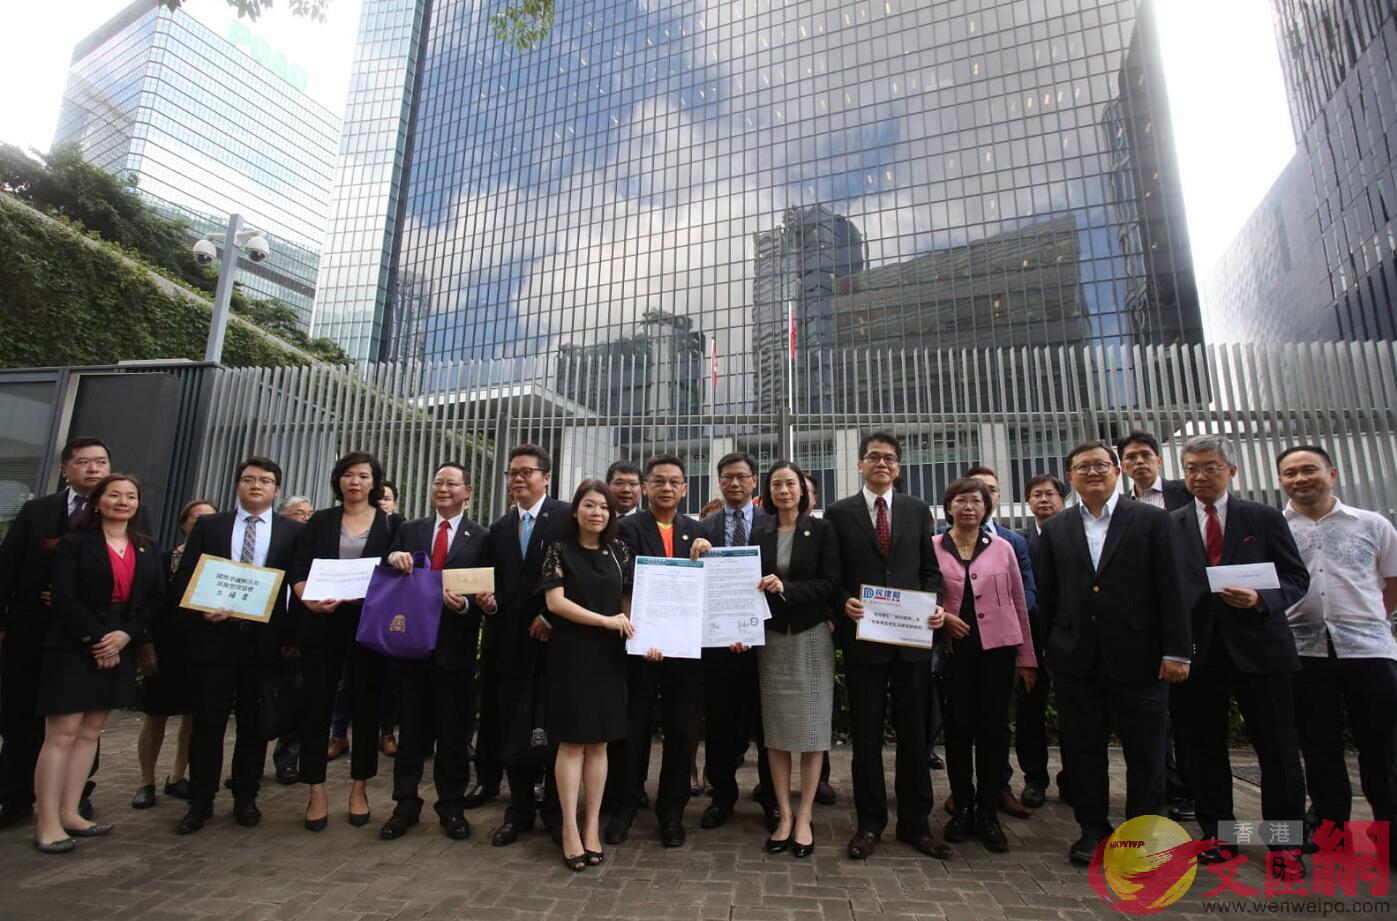 近20個法律團體聲明A支持修例C圖為團體展示聲明書C香港文匯報記者 劉國權 攝 